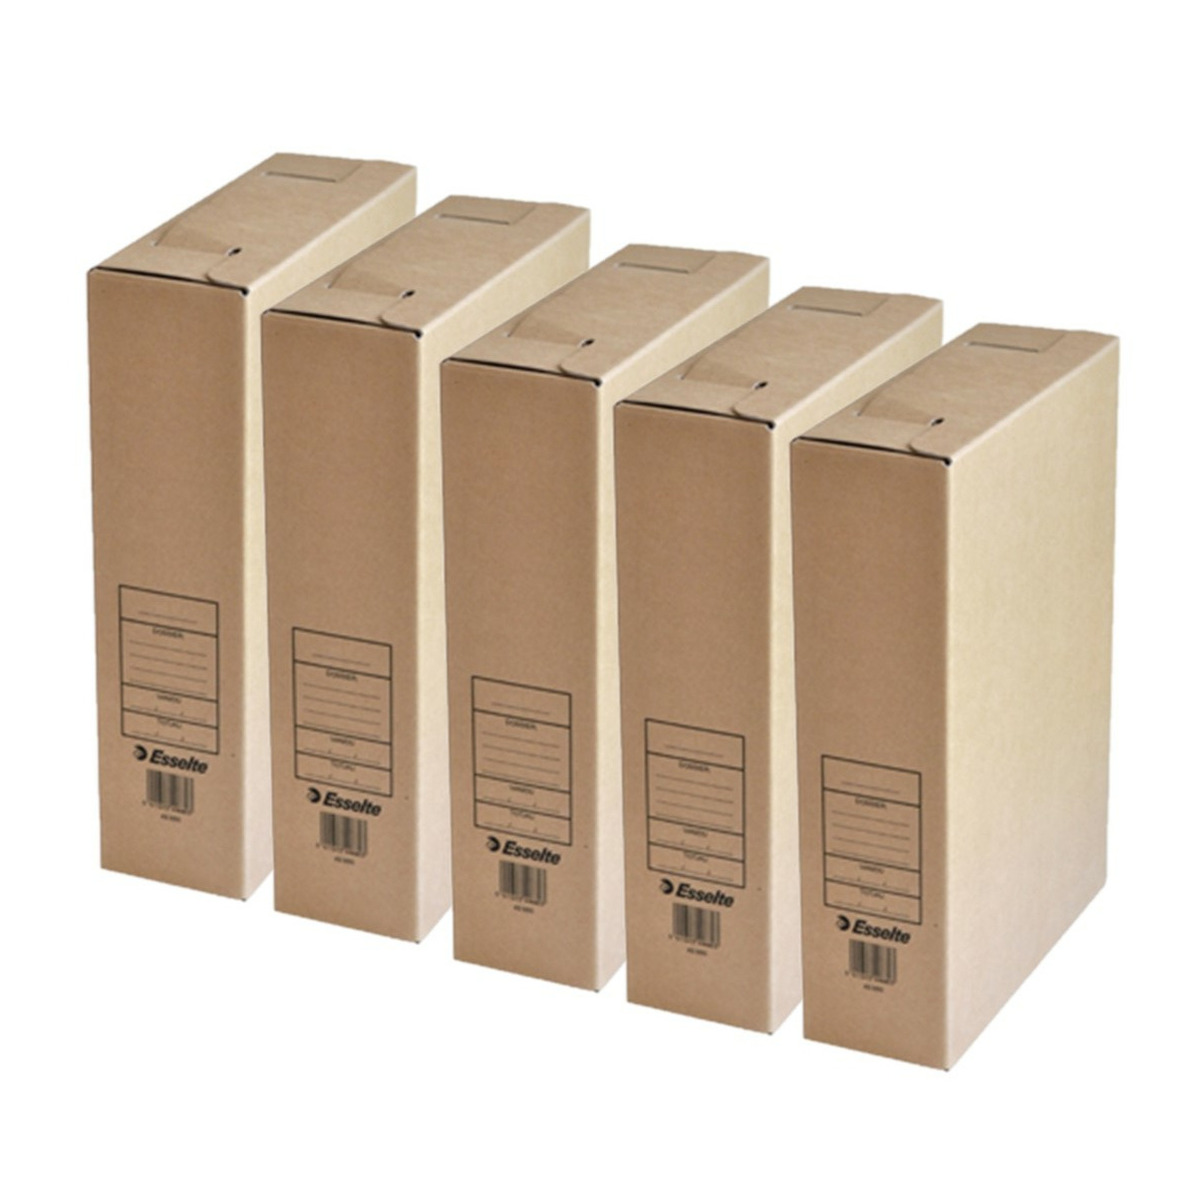 Kantoor archiefdoos 5x karton bruin 23 x 32 cm A4 formaat kantoor artikelen